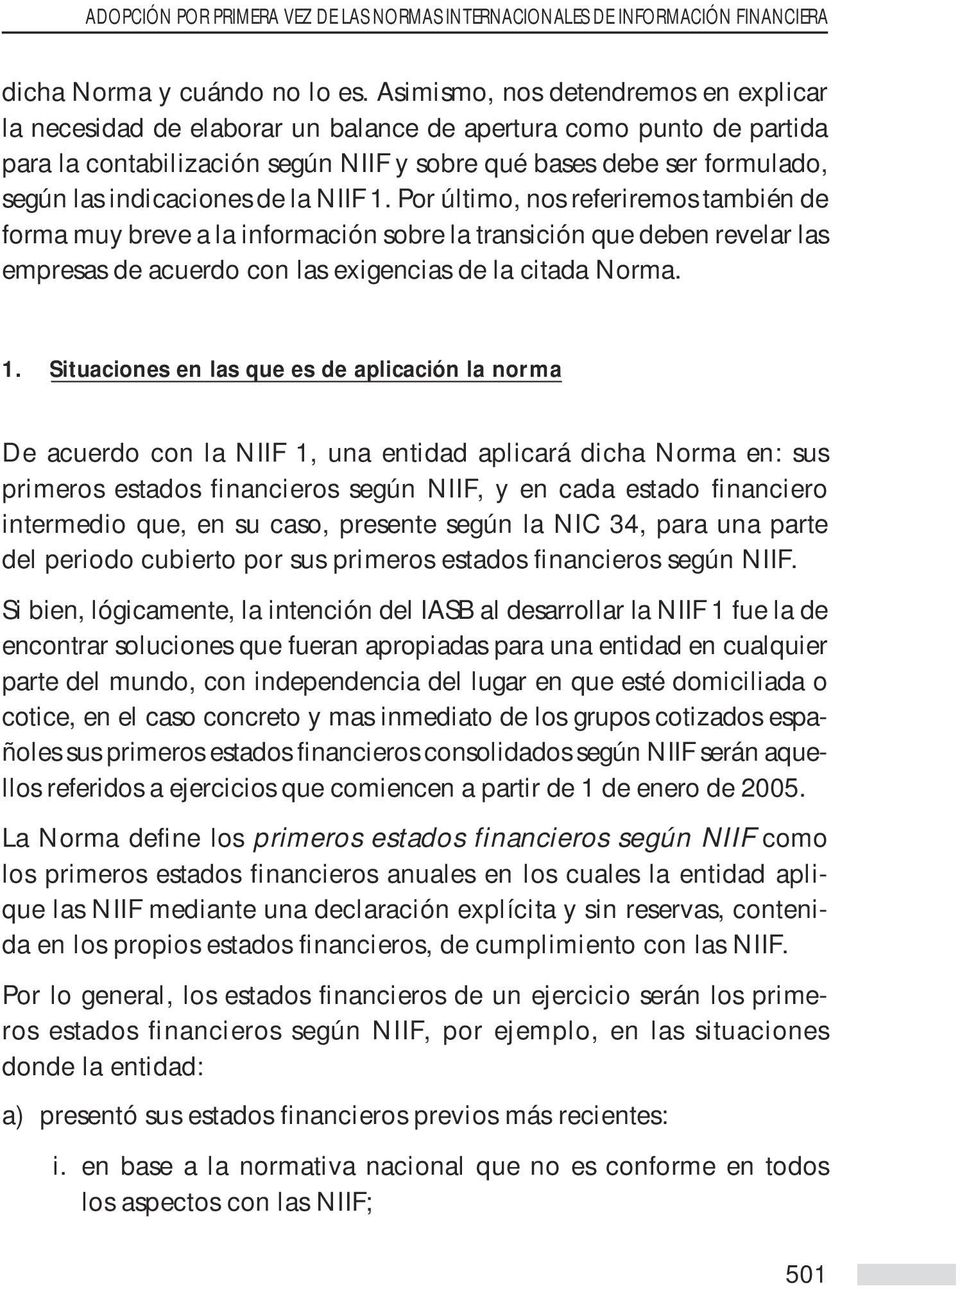 indicaciones de la NIIF 1. Por último, nos referiremos también de forma muy breve a la información sobre la transición que deben revelar las empresas de acuerdo con las exigencias de la citada Norma.